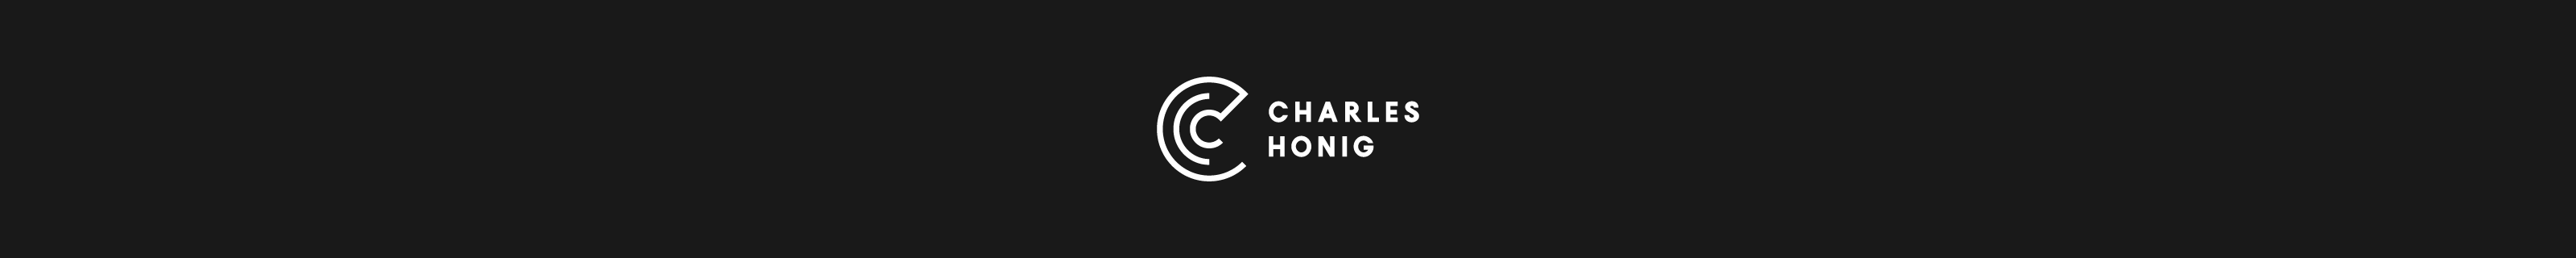 Charles Honig 的个人资料横幅